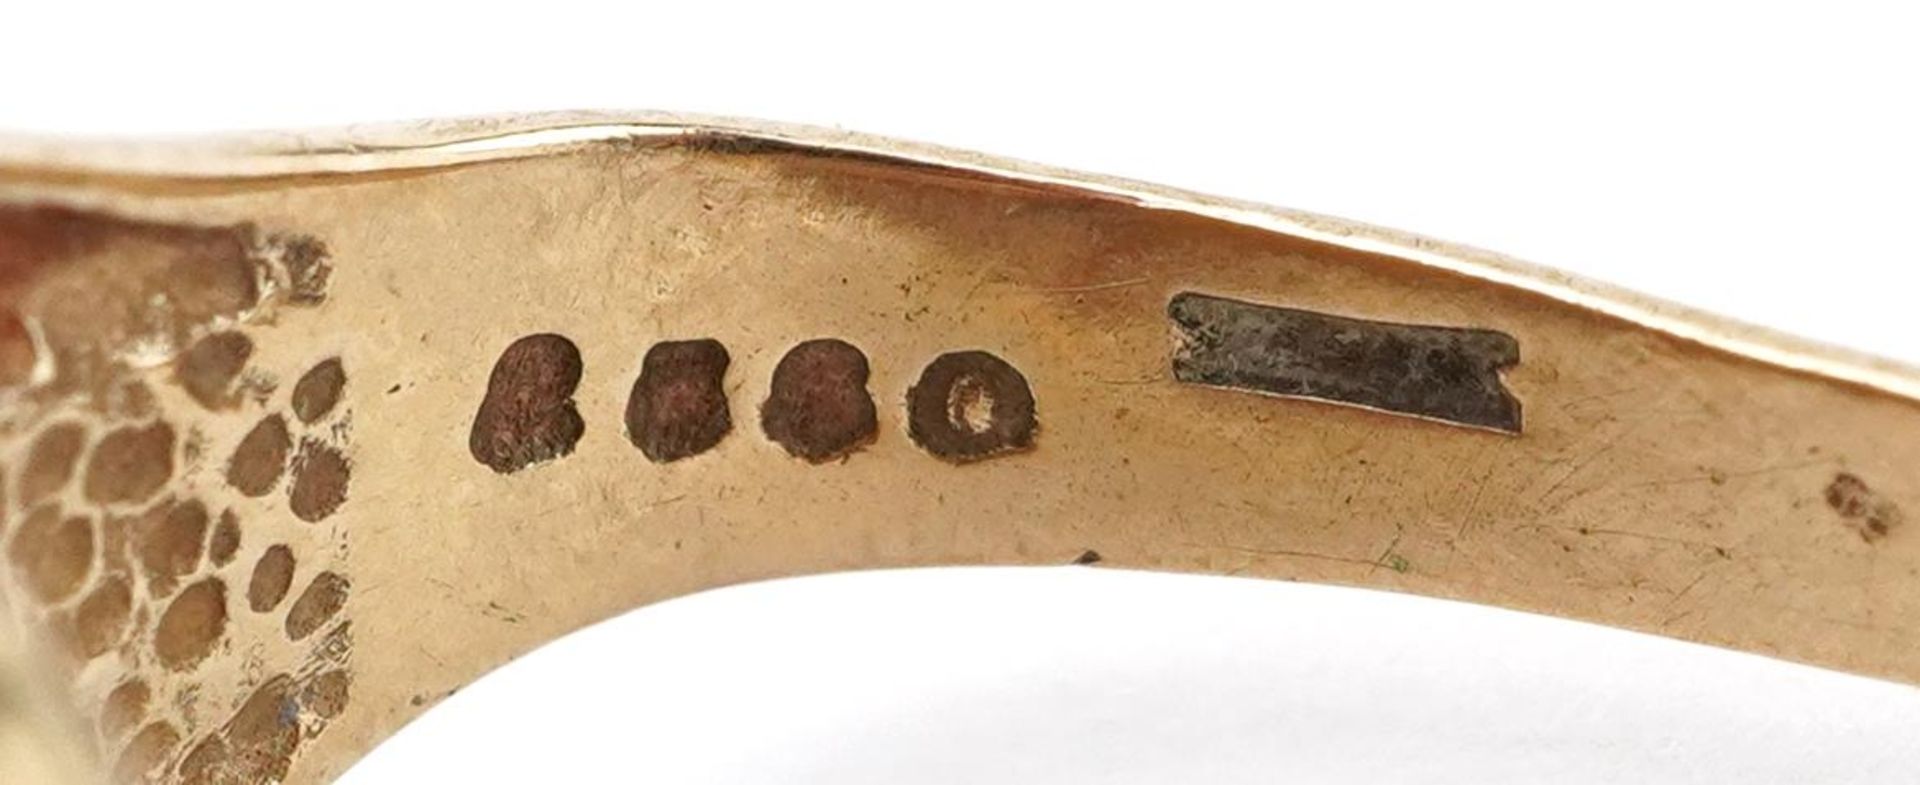 Broken 9ct gold tiger's eye signet ring, 4.5g - Image 4 of 5